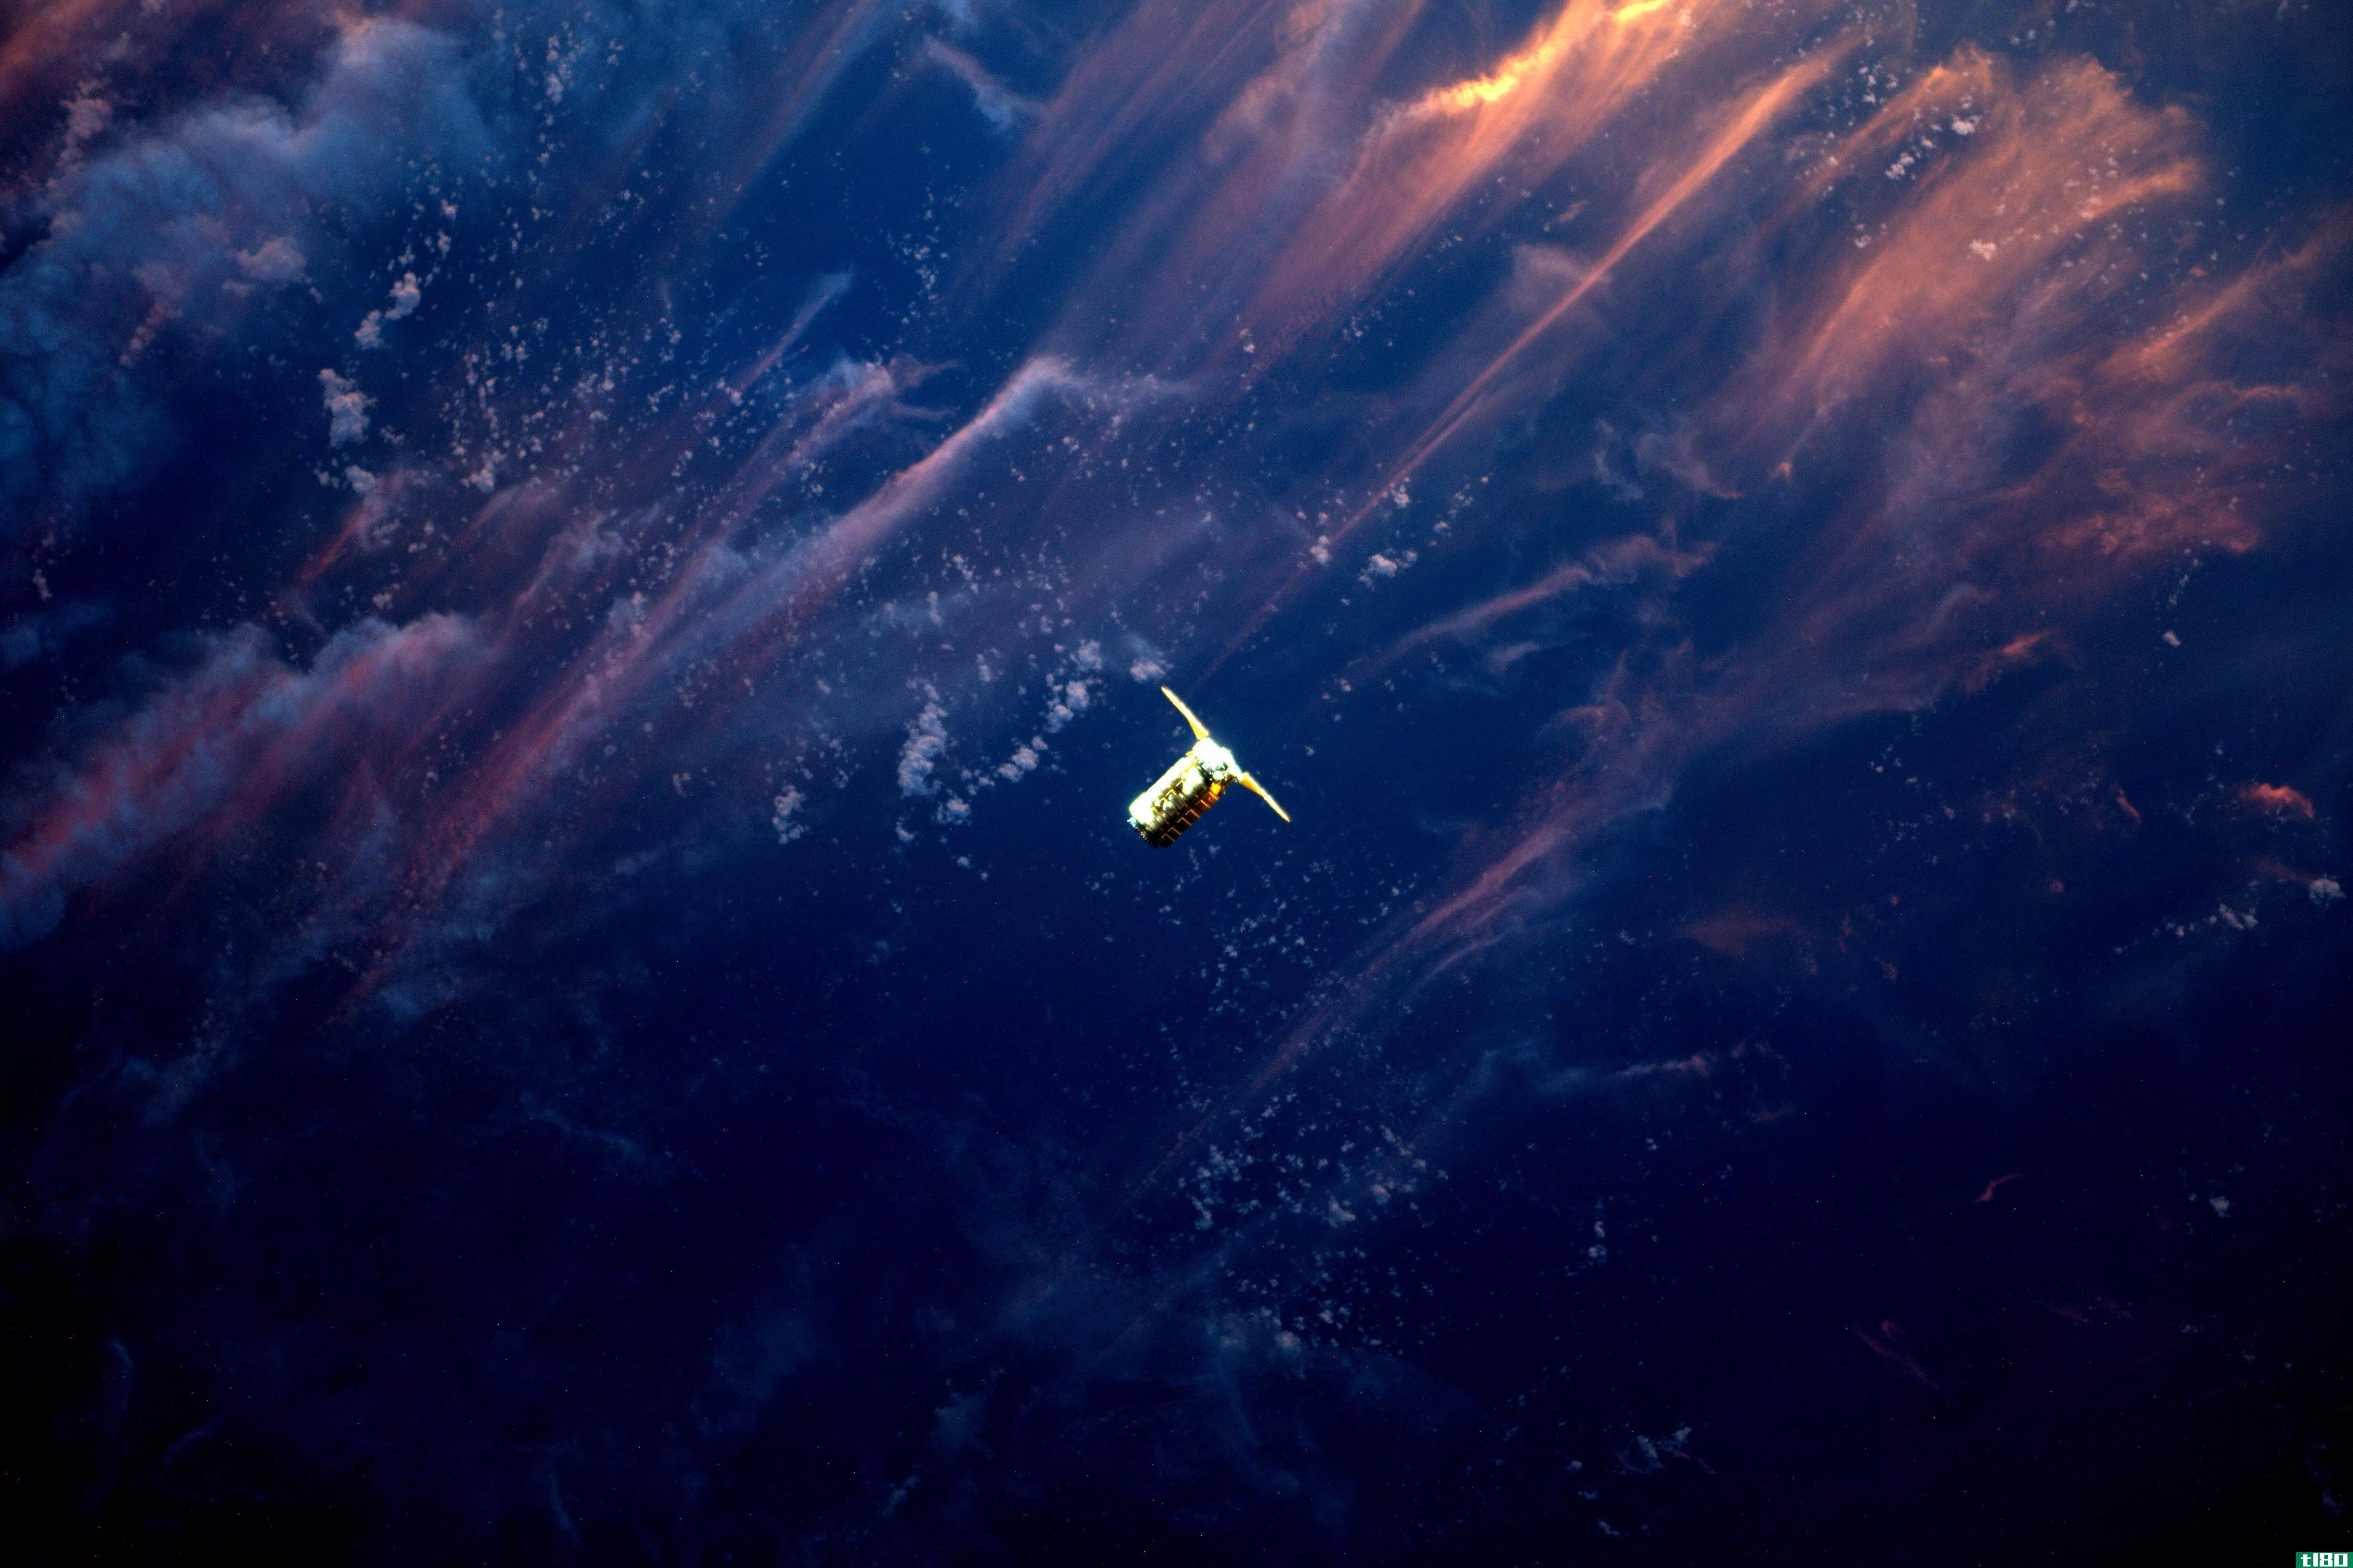 这张令人叹为观止的宇宙飞船日落照片是一个完美时机的好例子